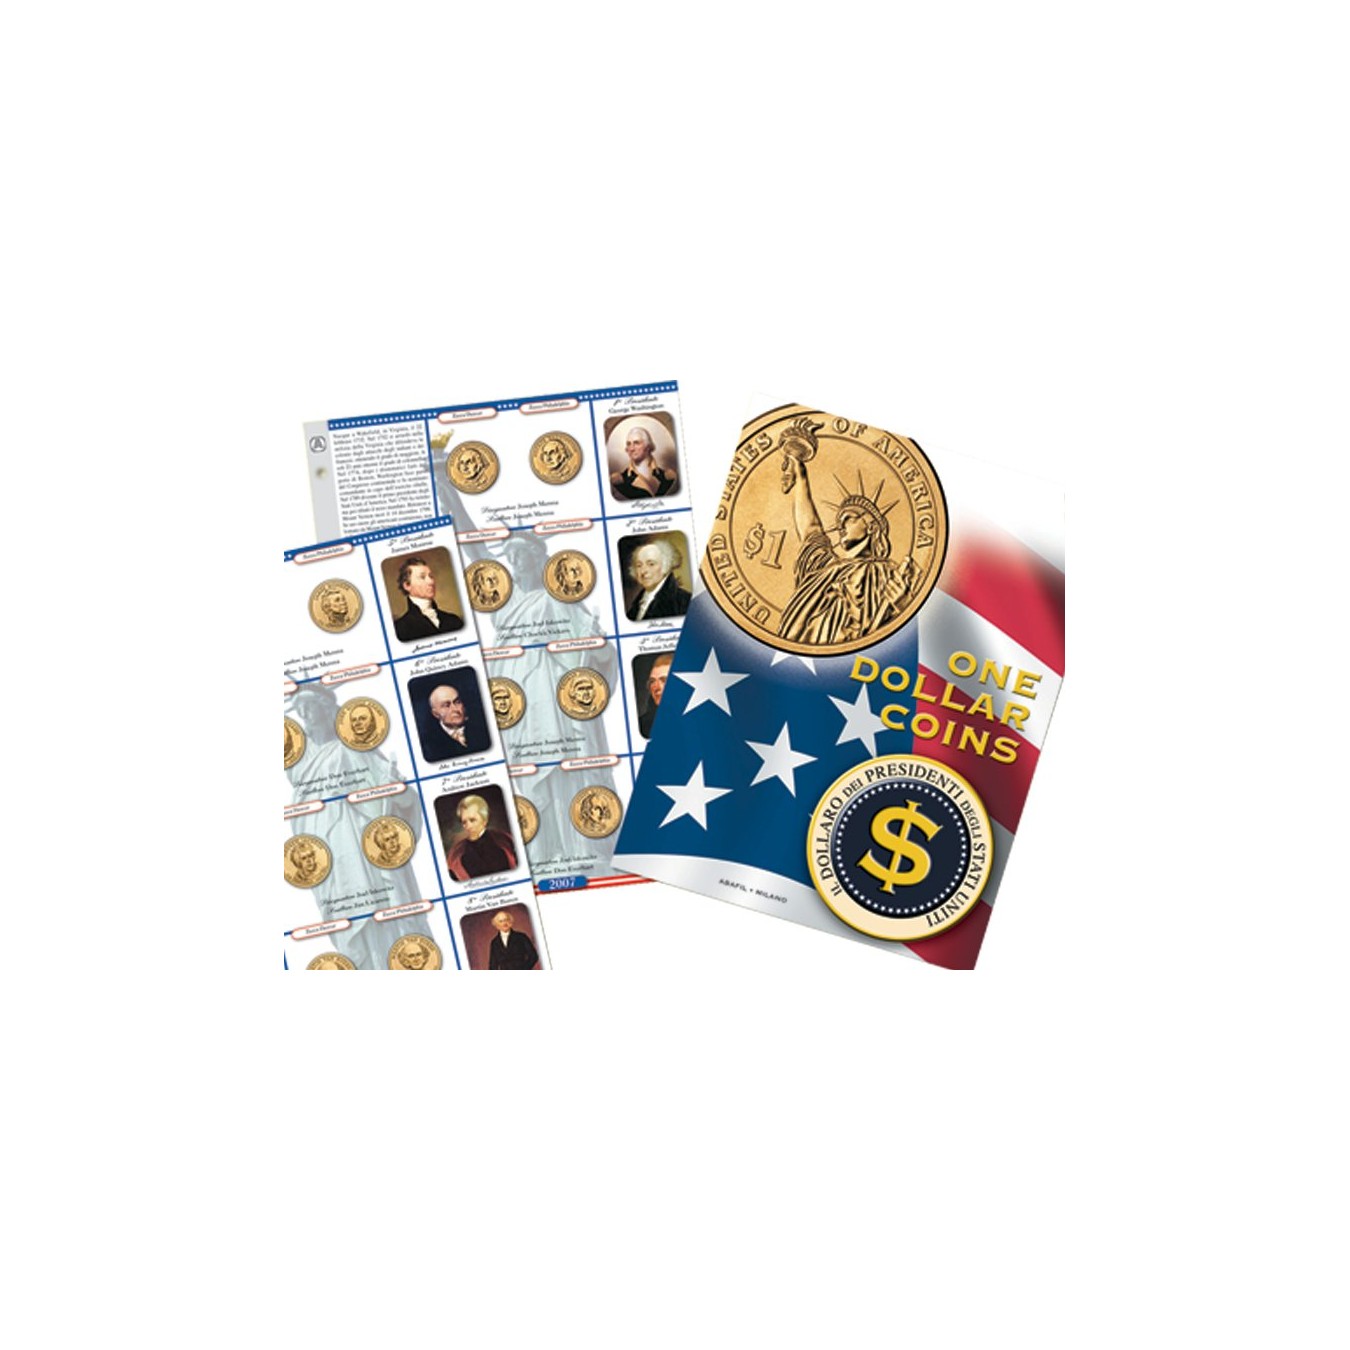 One Dollar Coins - foglio di aggiornamento 2013